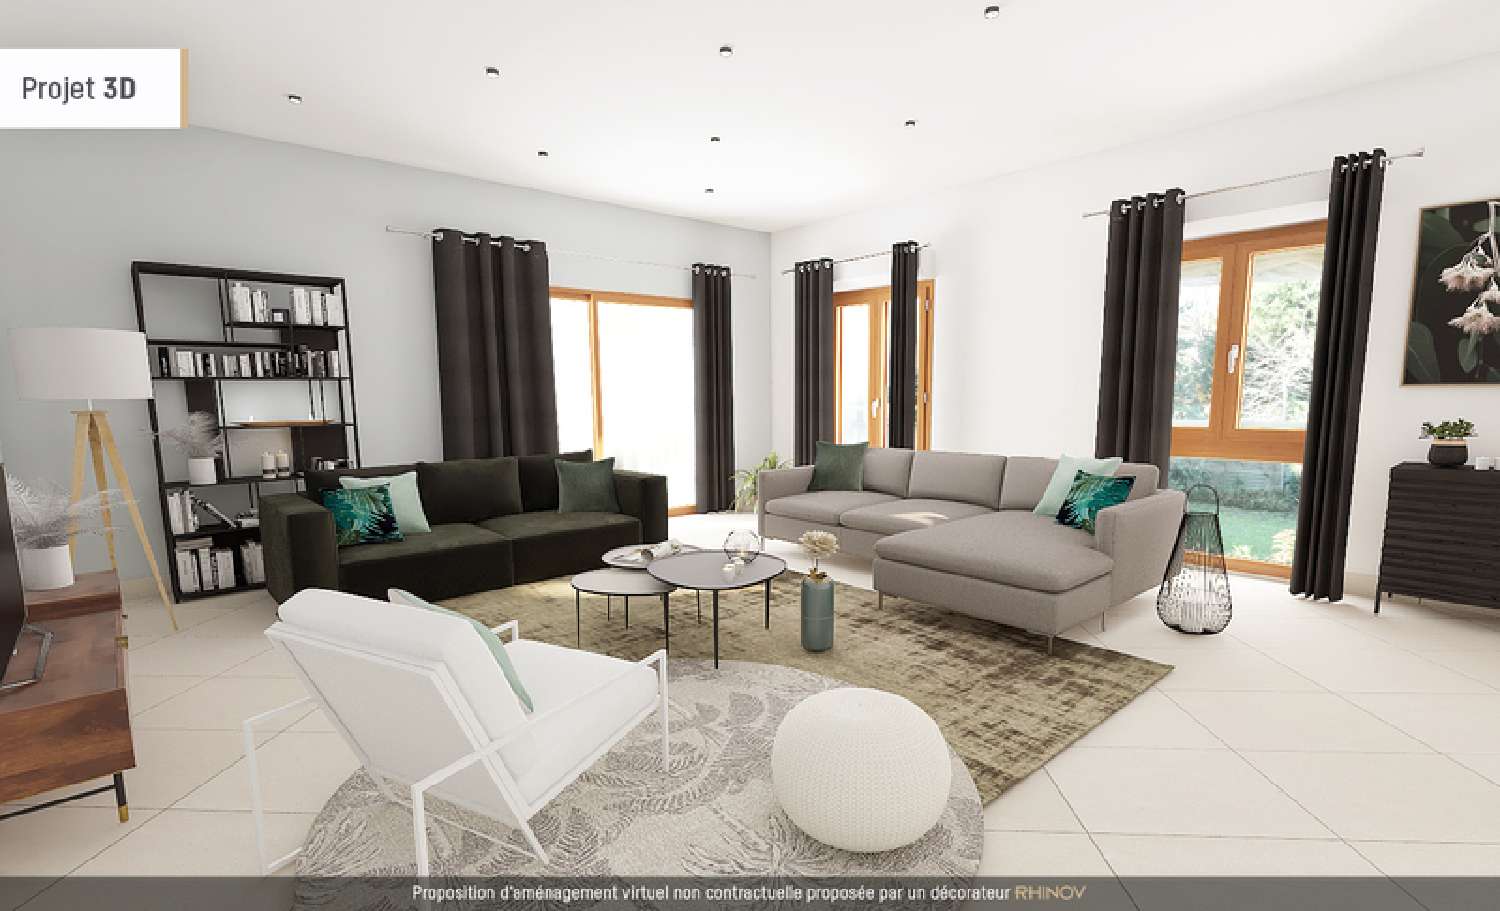 Villy-le-Pelloux Haute-Savoie Wohnung/ Apartment Bild 6515075